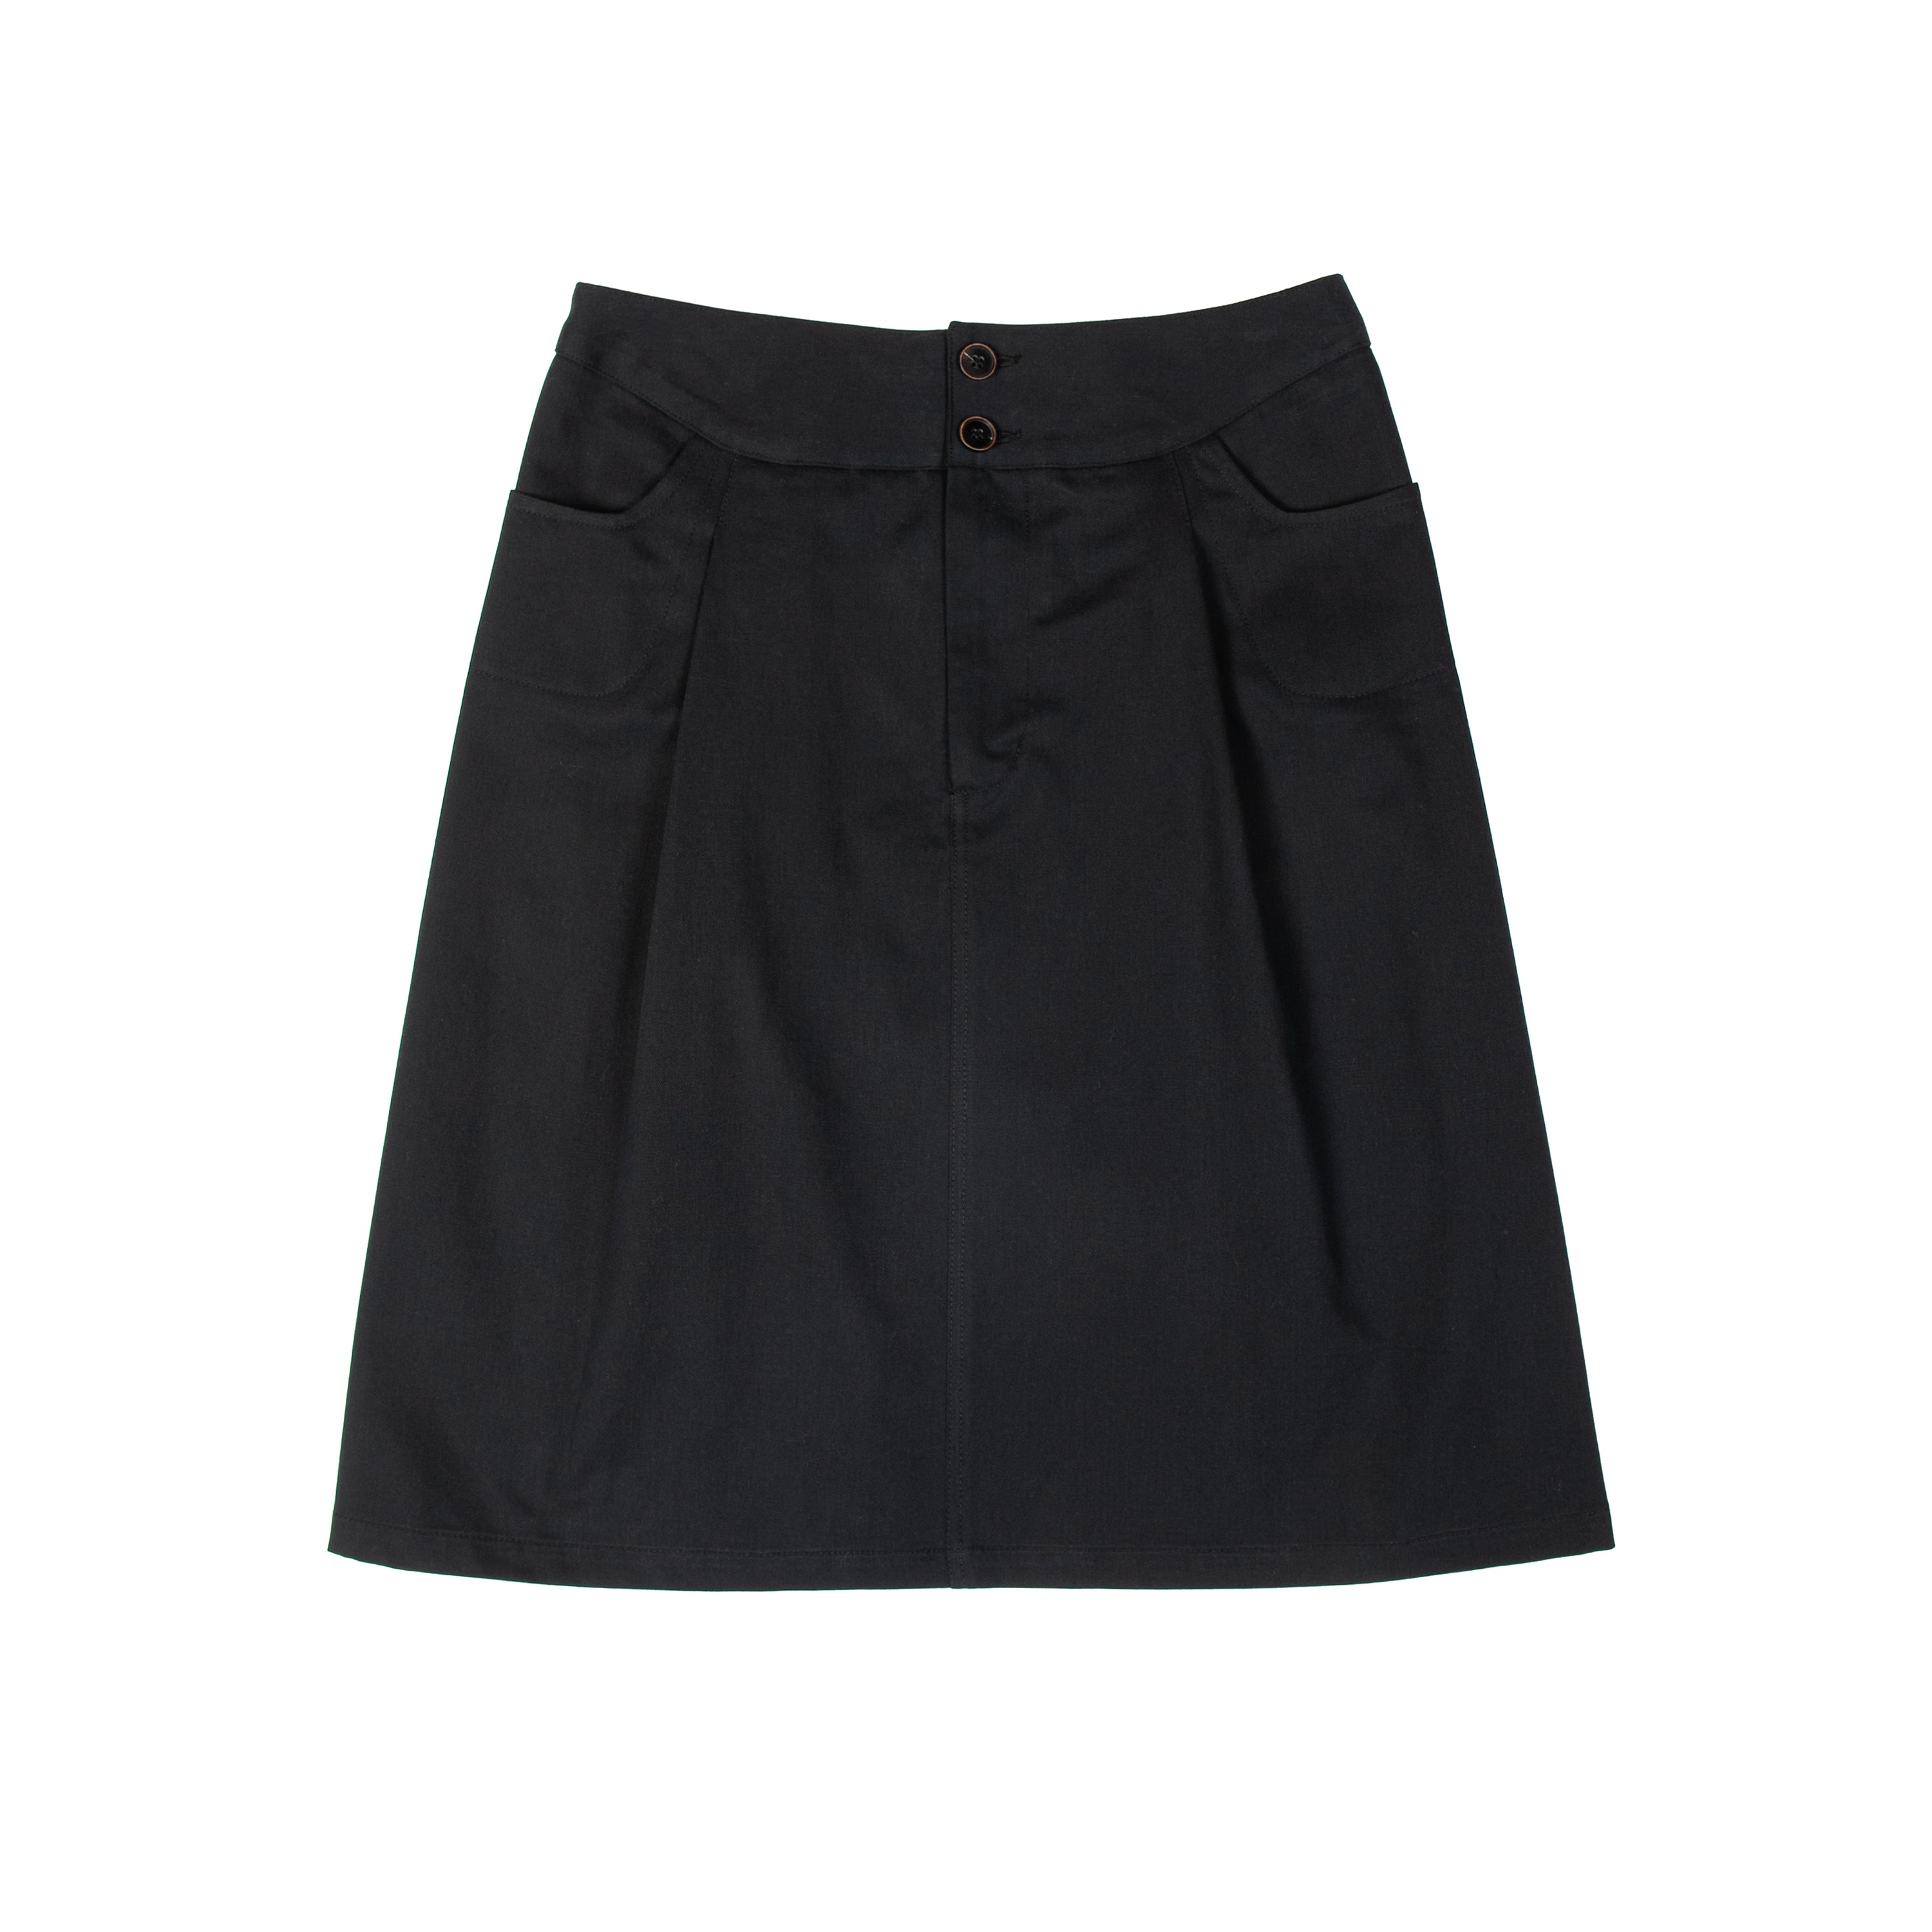 Work Skirt Cotton Twill Black - PREORDER